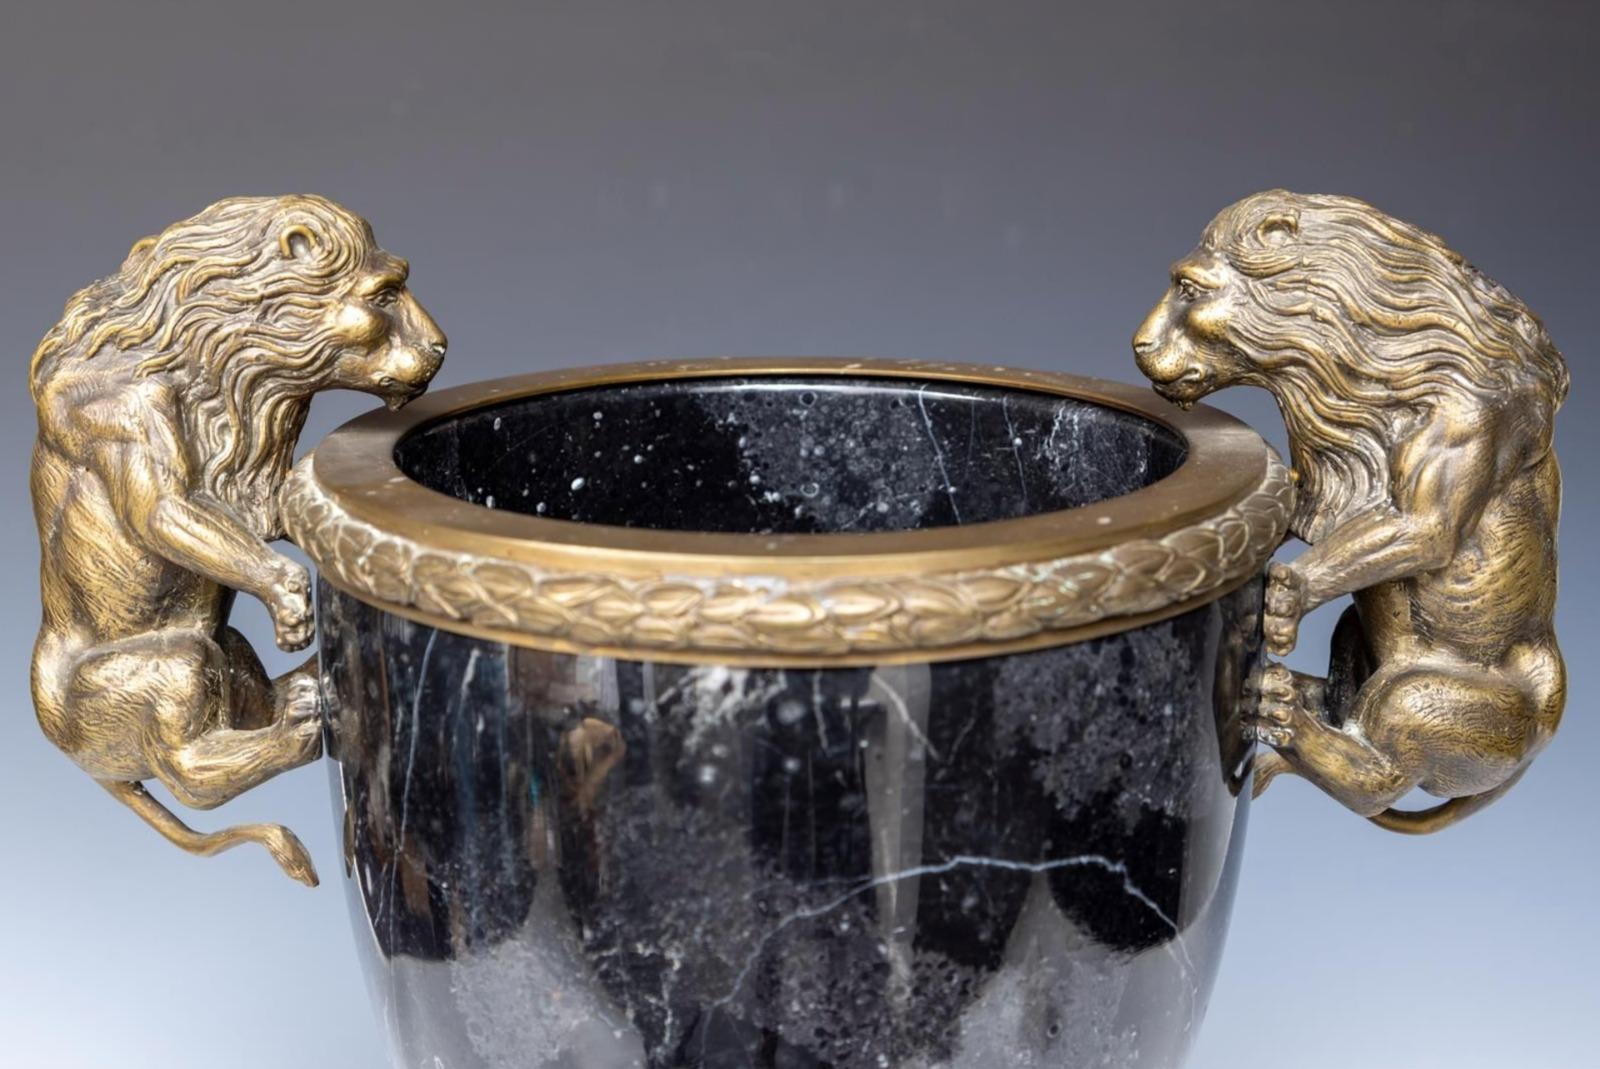 Bedeutende Vase Napoleon III, 19. Jahrhundert
Kassette aus schwarzem Marmor mit Bronzebeschlägen in Form von Löwen, um 1860. 
H.: 45 cm.
Sehr guter Zustand.